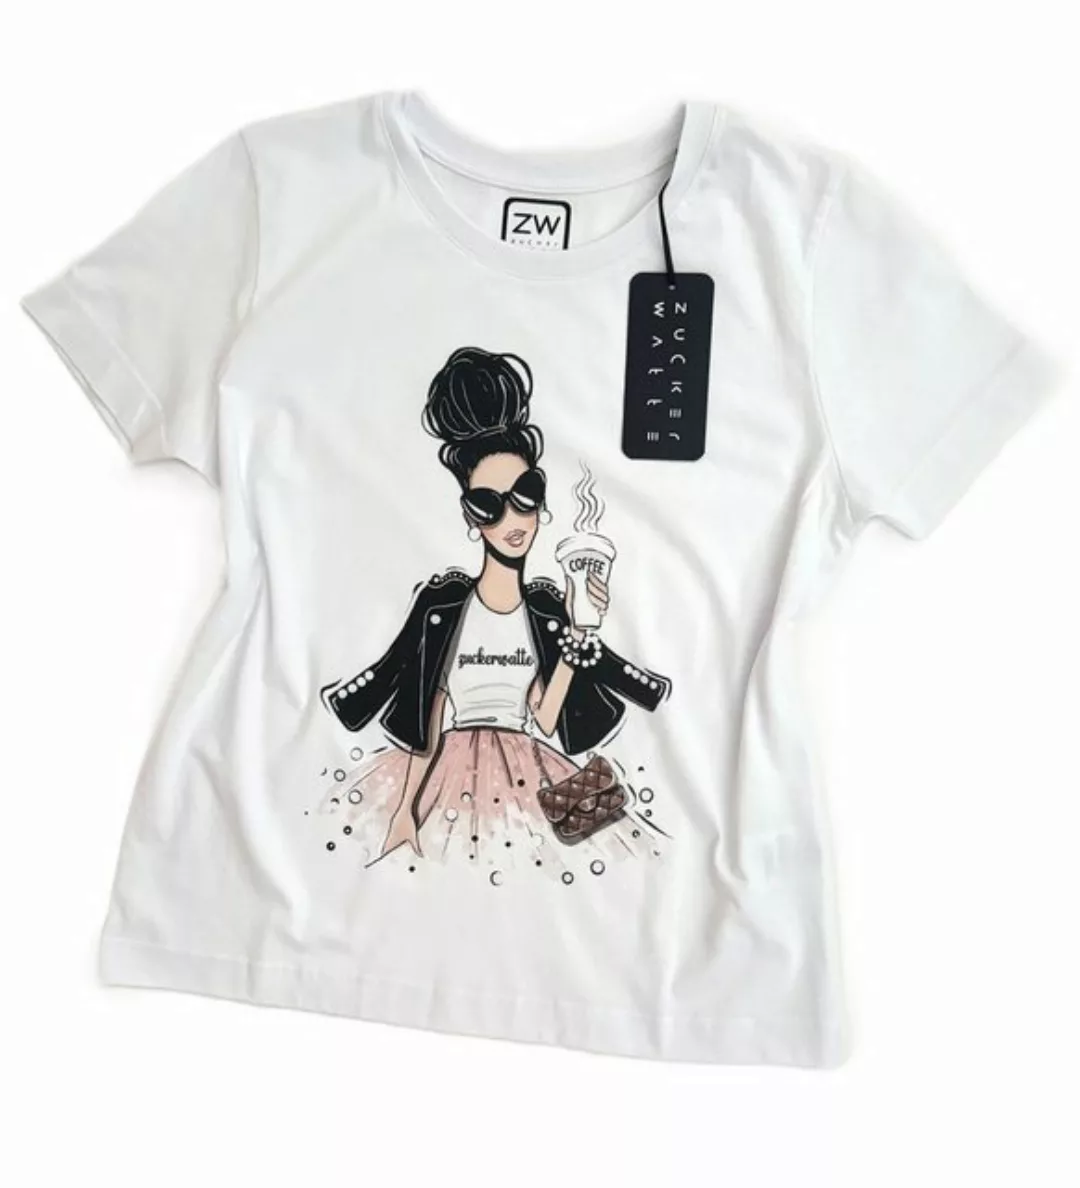 Zuckerwatte Print-Shirt mit Rundhals, Boyfriend Style, aus 100% feiner Baum günstig online kaufen